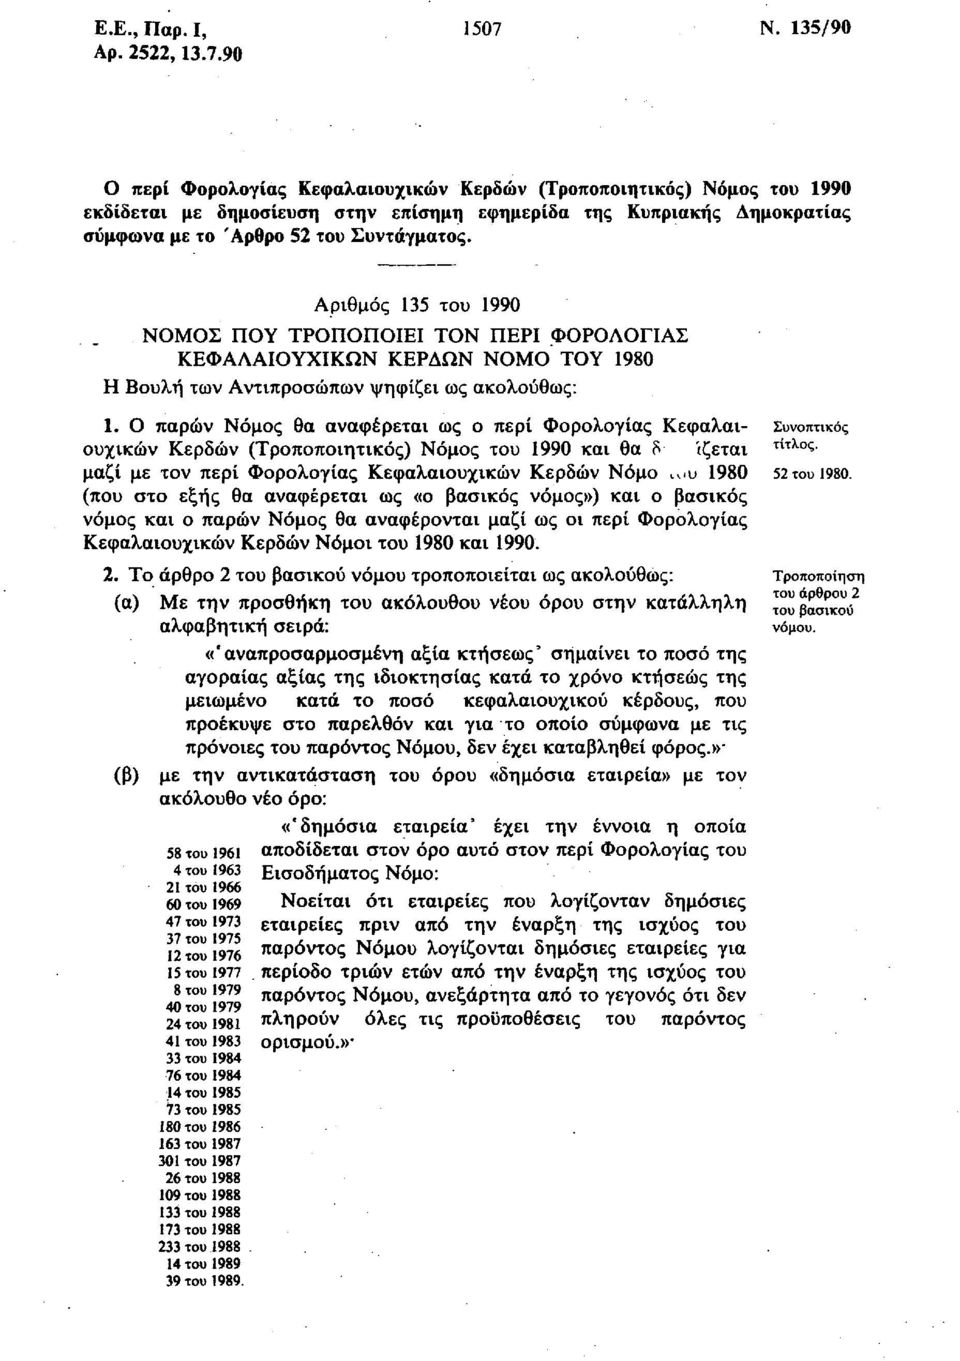 90 Ο περί Φορολογίας Κεφαλαιουχικών Κερδών (Τροποποιητικός) Νόμος του 1990 εκδίδεται με δημοσίευση στην επίσημη εφημερίδα της Κυπριακής Δημοκρατίας σύμφωνα με το Άρθρο 52 του Συντάγματος.